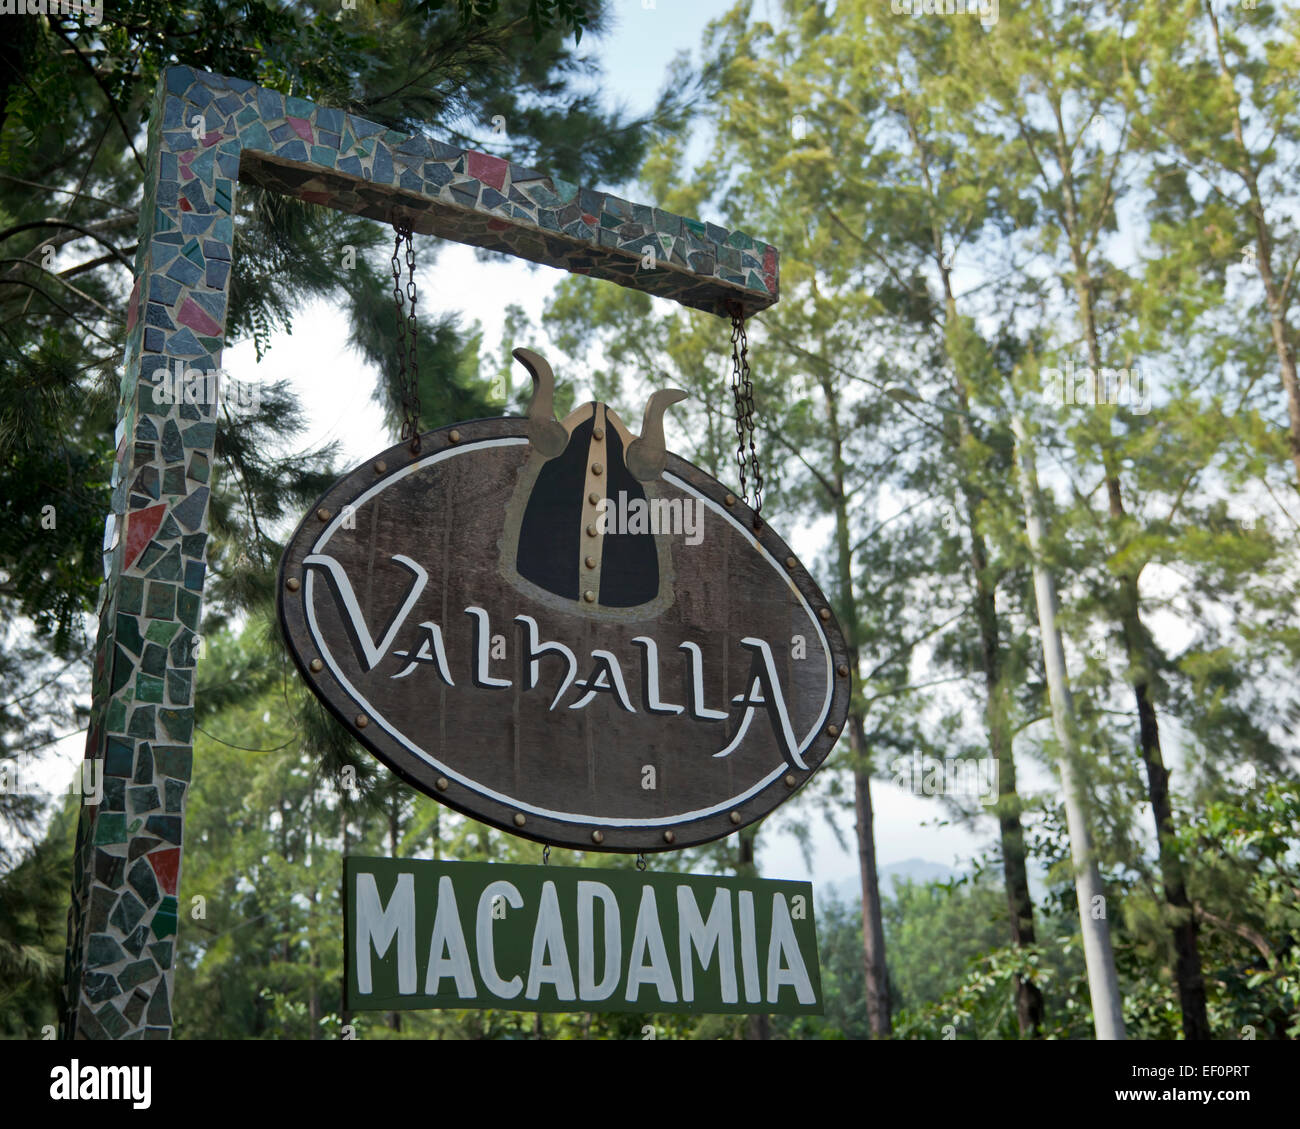 Entrance to Valhalla Macadamia Nut Farm Stock Photo